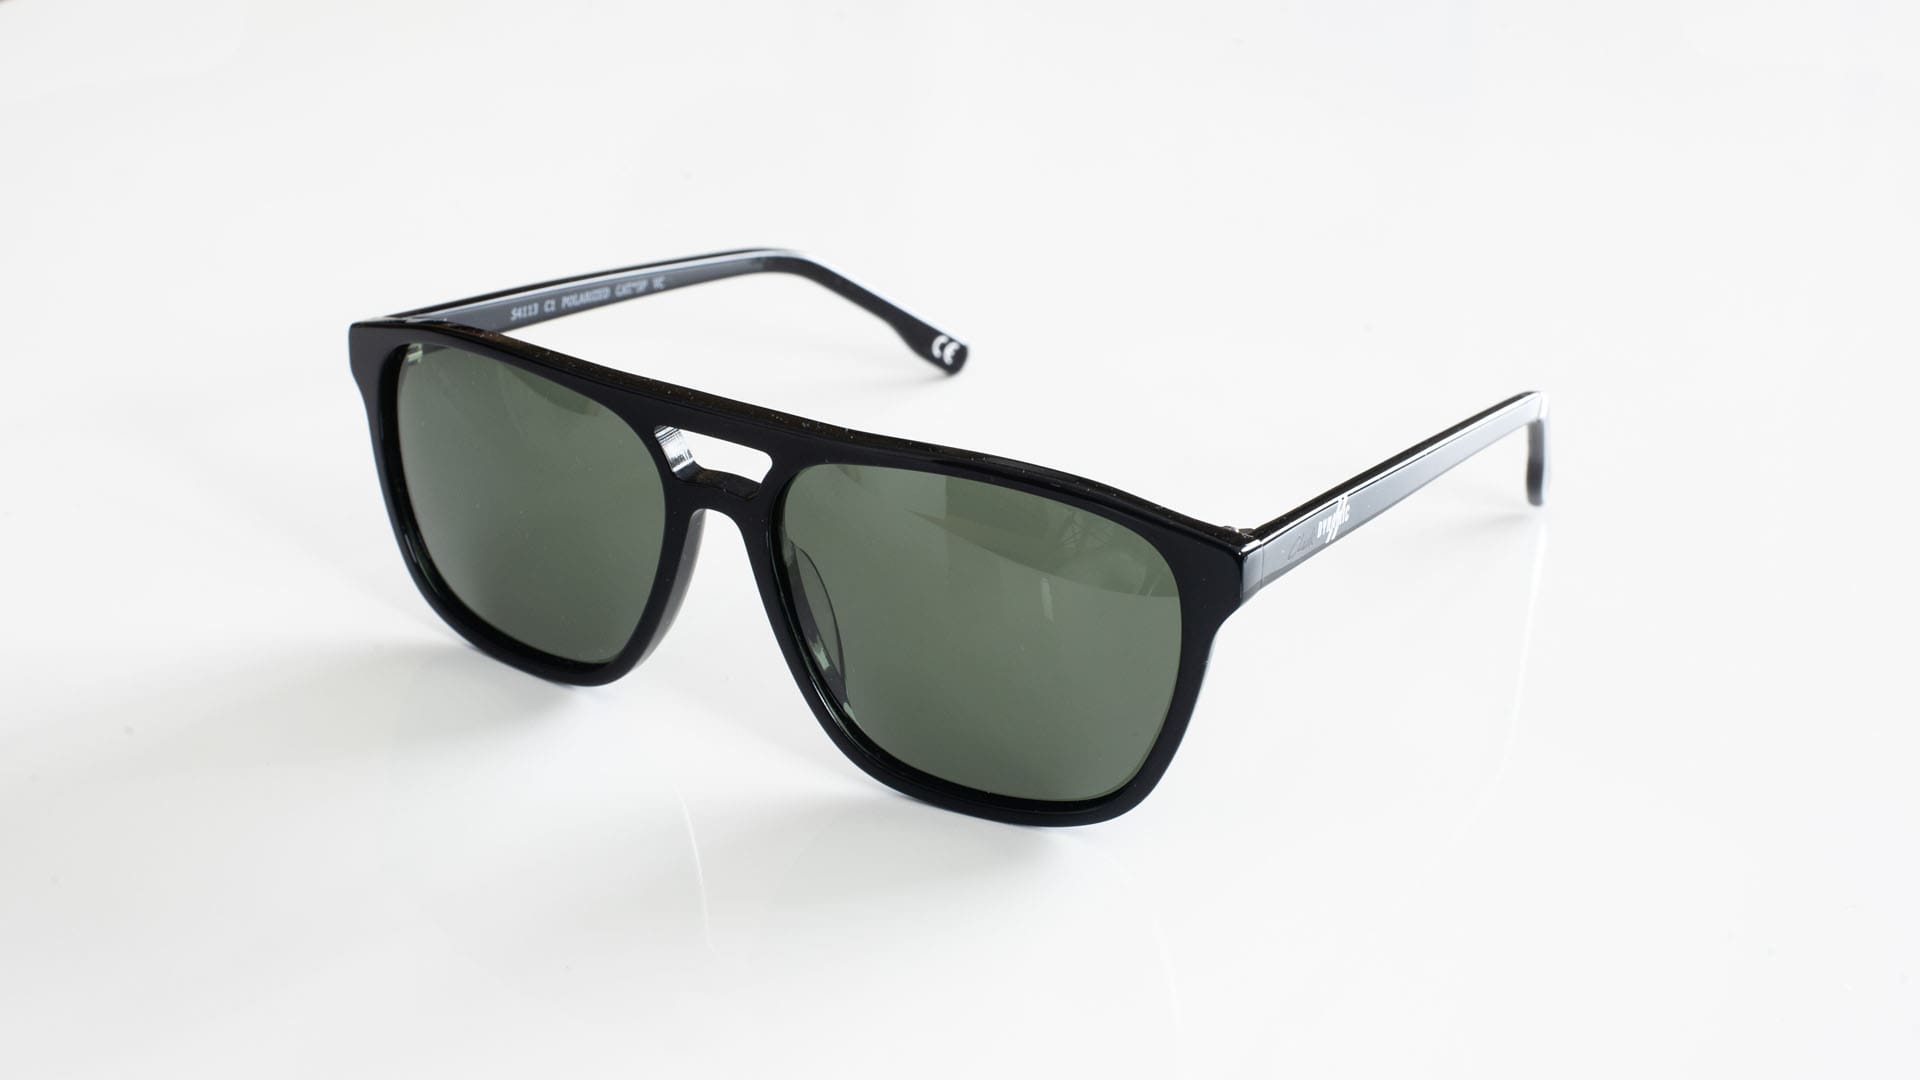 gafas de sol hombre modelo VPH4 negras